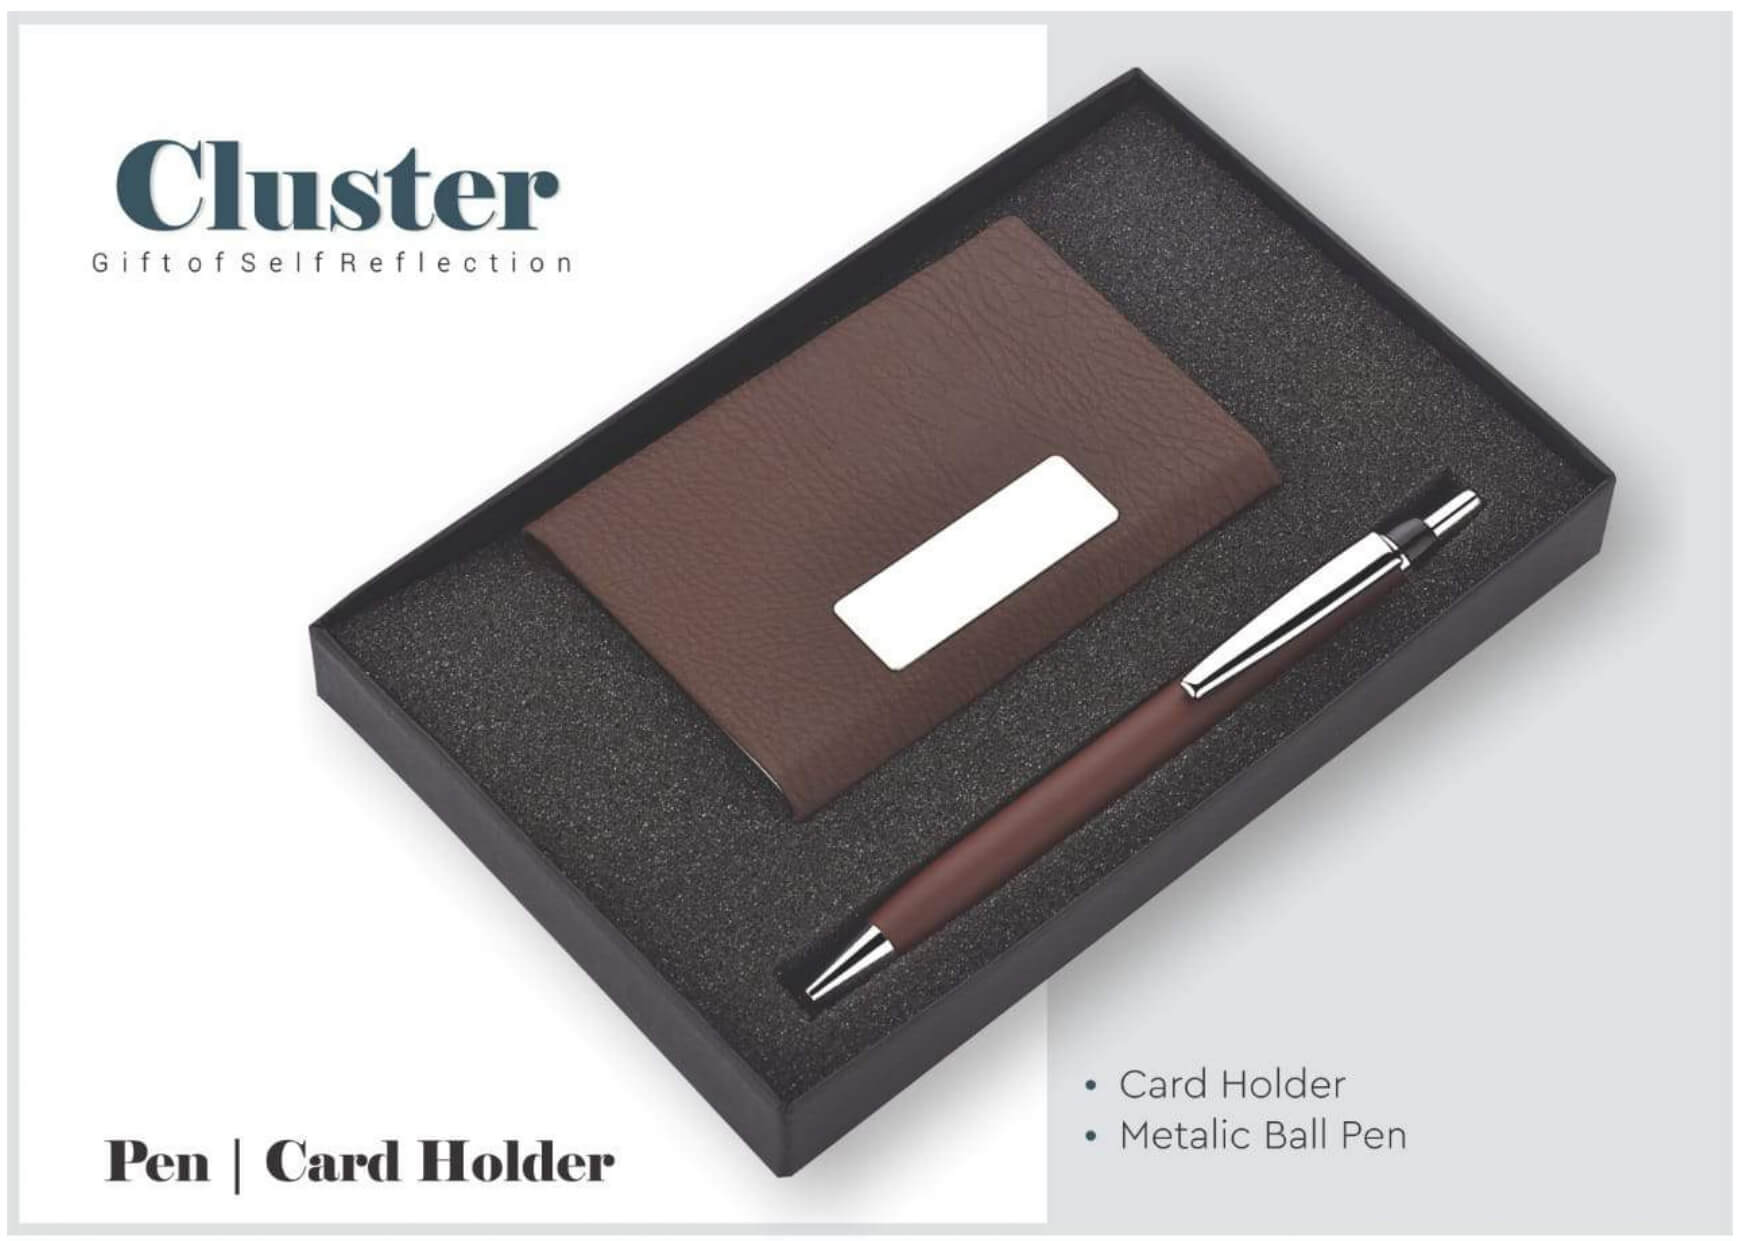 Card Holder and Pen Set Cluster